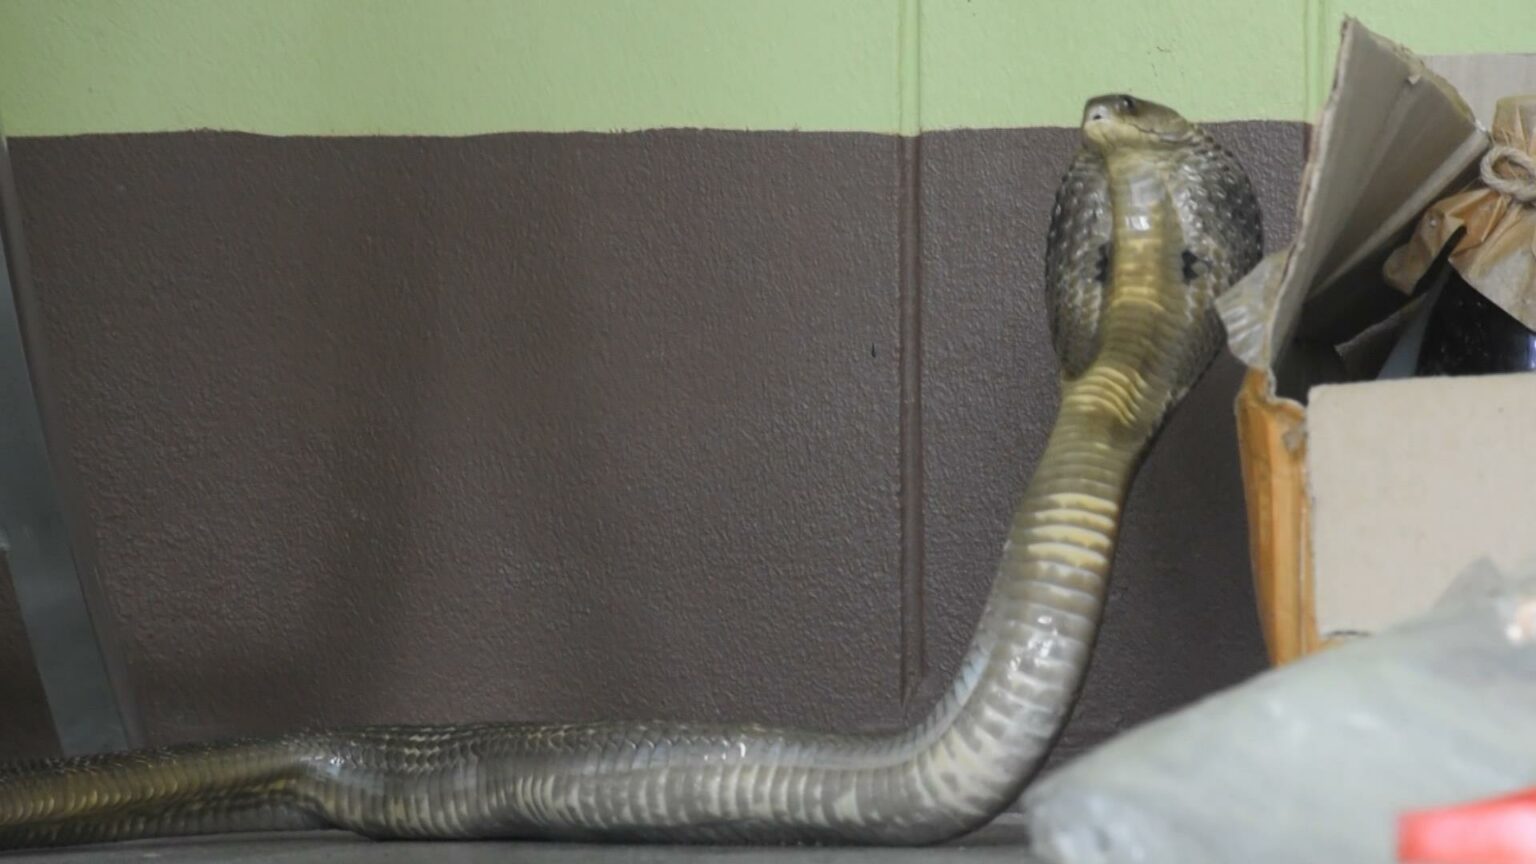 Ядовитая кобра в посылке из Таиланда — случай на почте